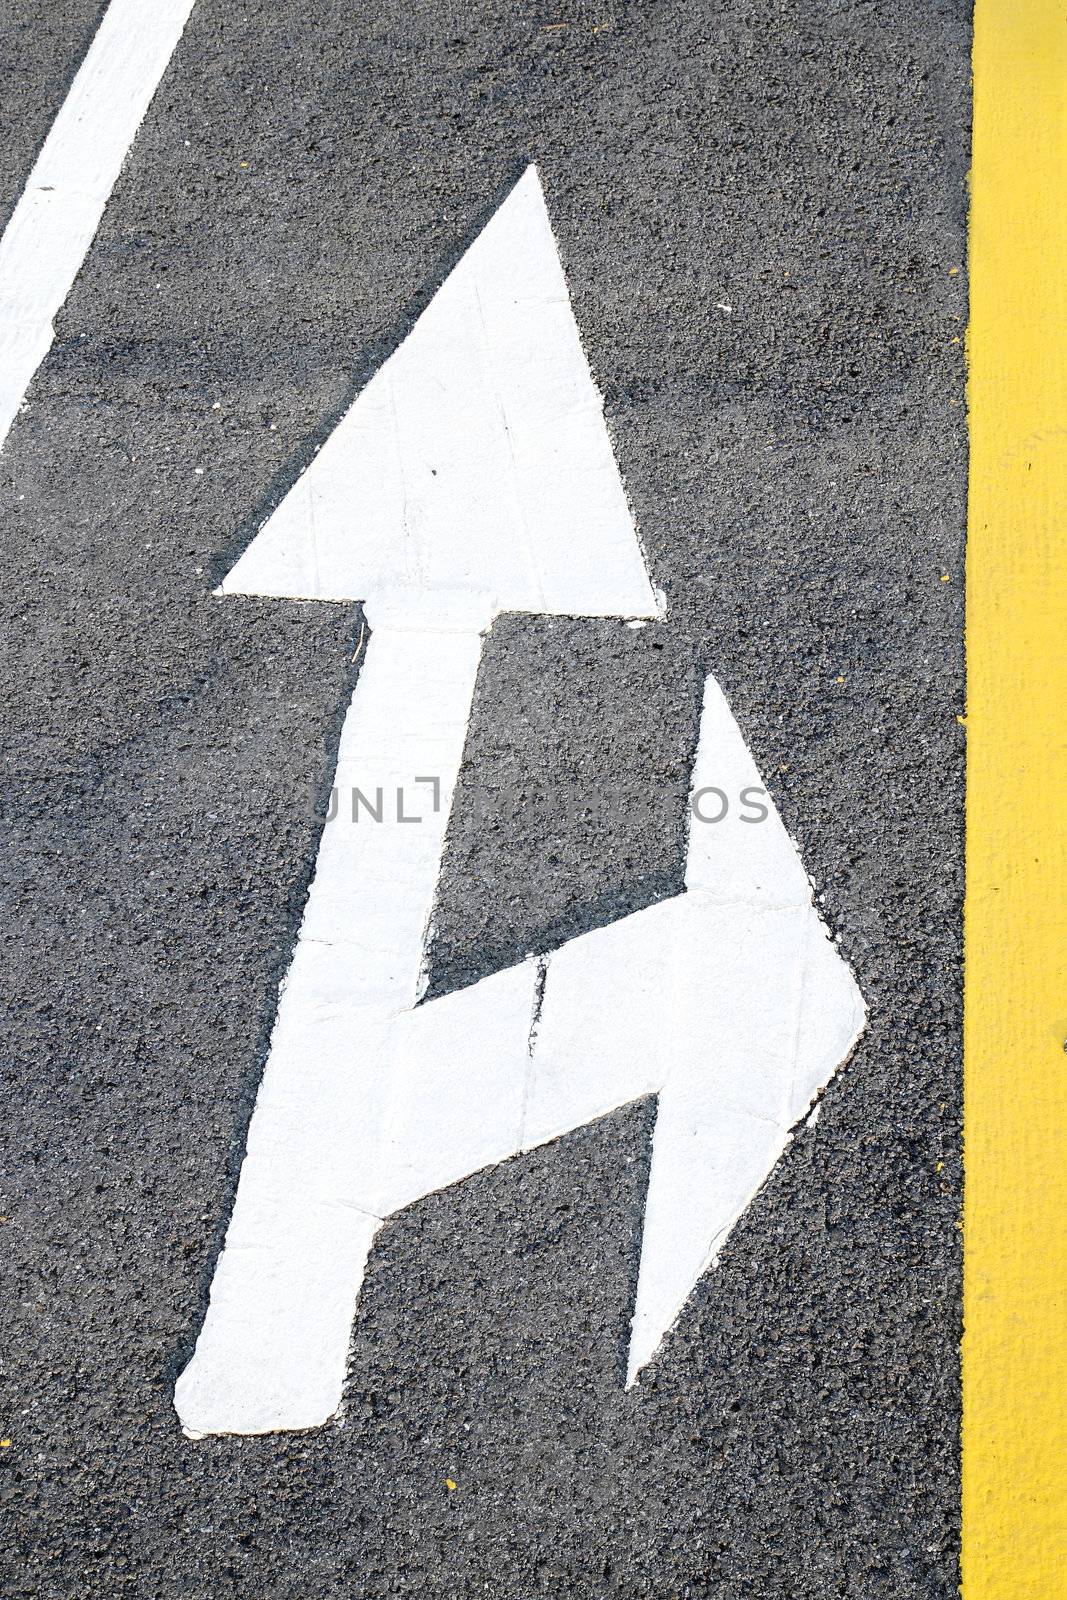 Street, road, arrow direction by geargodz